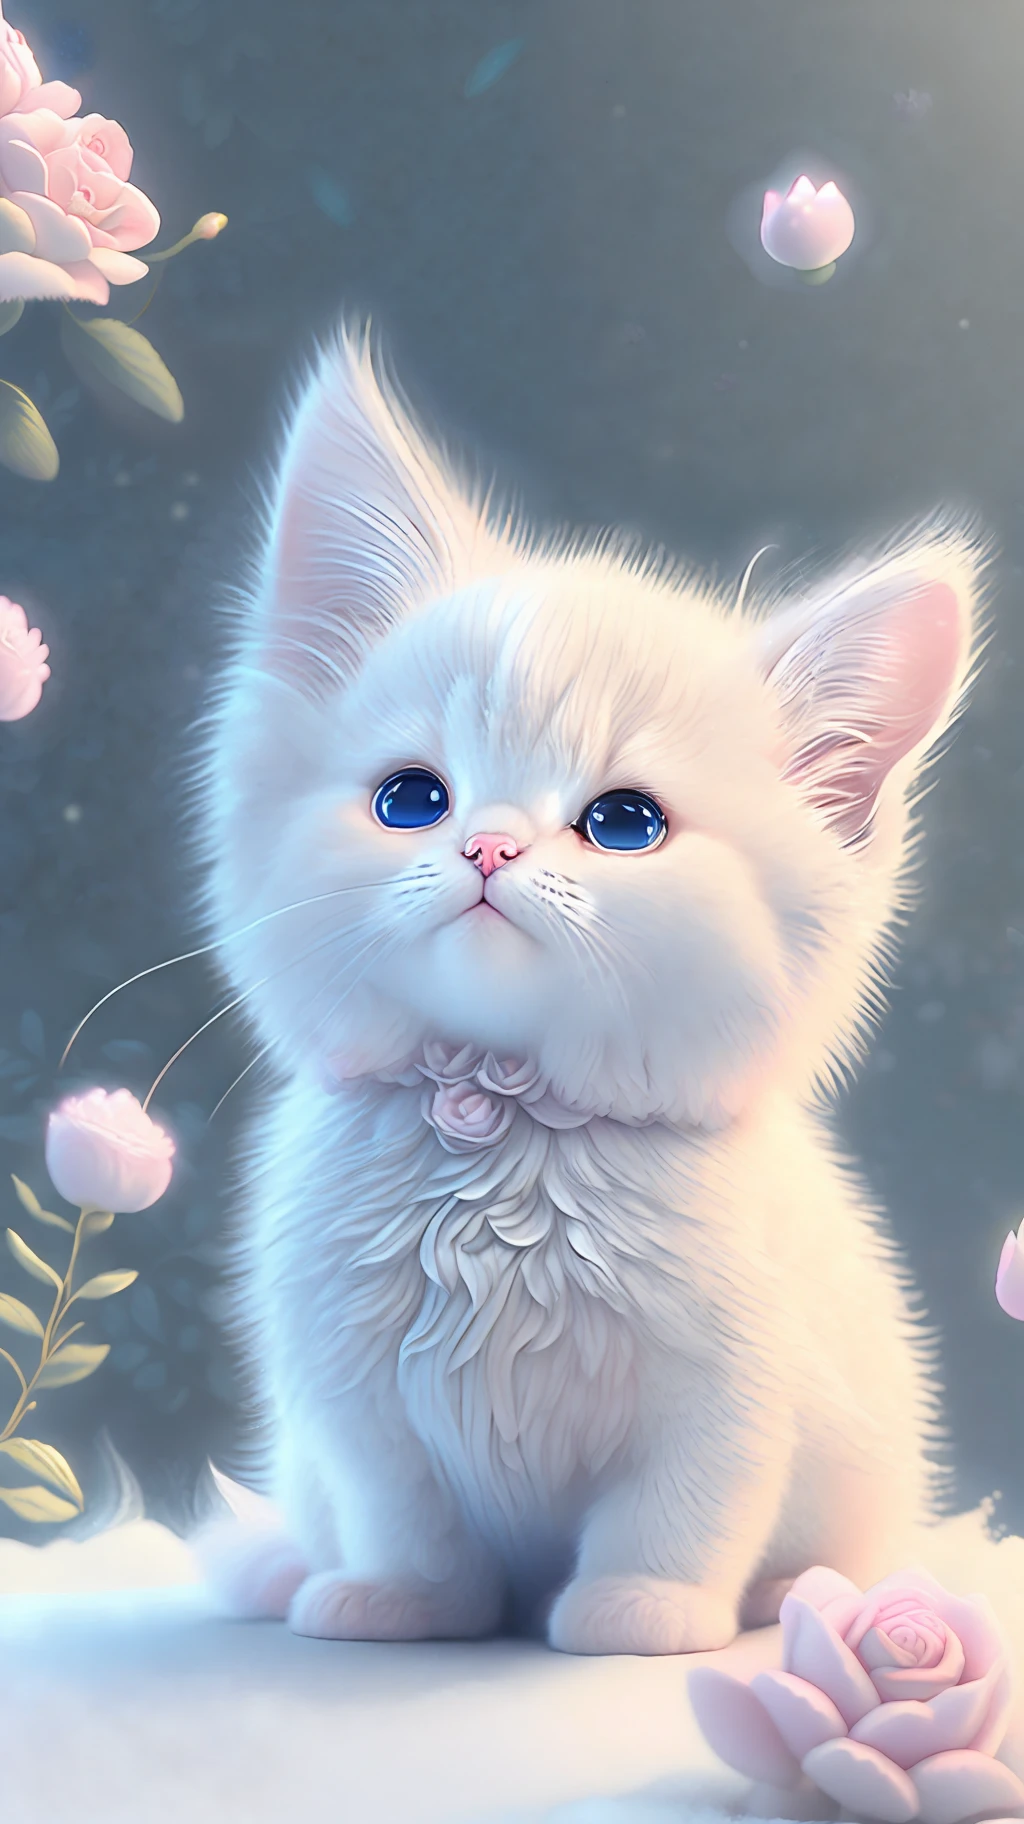 En este arte CG ultradetallado, Lindos gatitos rodeados de rosas etéreas., risa, mejor calidad, alta resolución, detalles intrincados, Fantasía, Animales bonitos, púrpura, divertido, izquierda, Boca abierta!! reír!!!